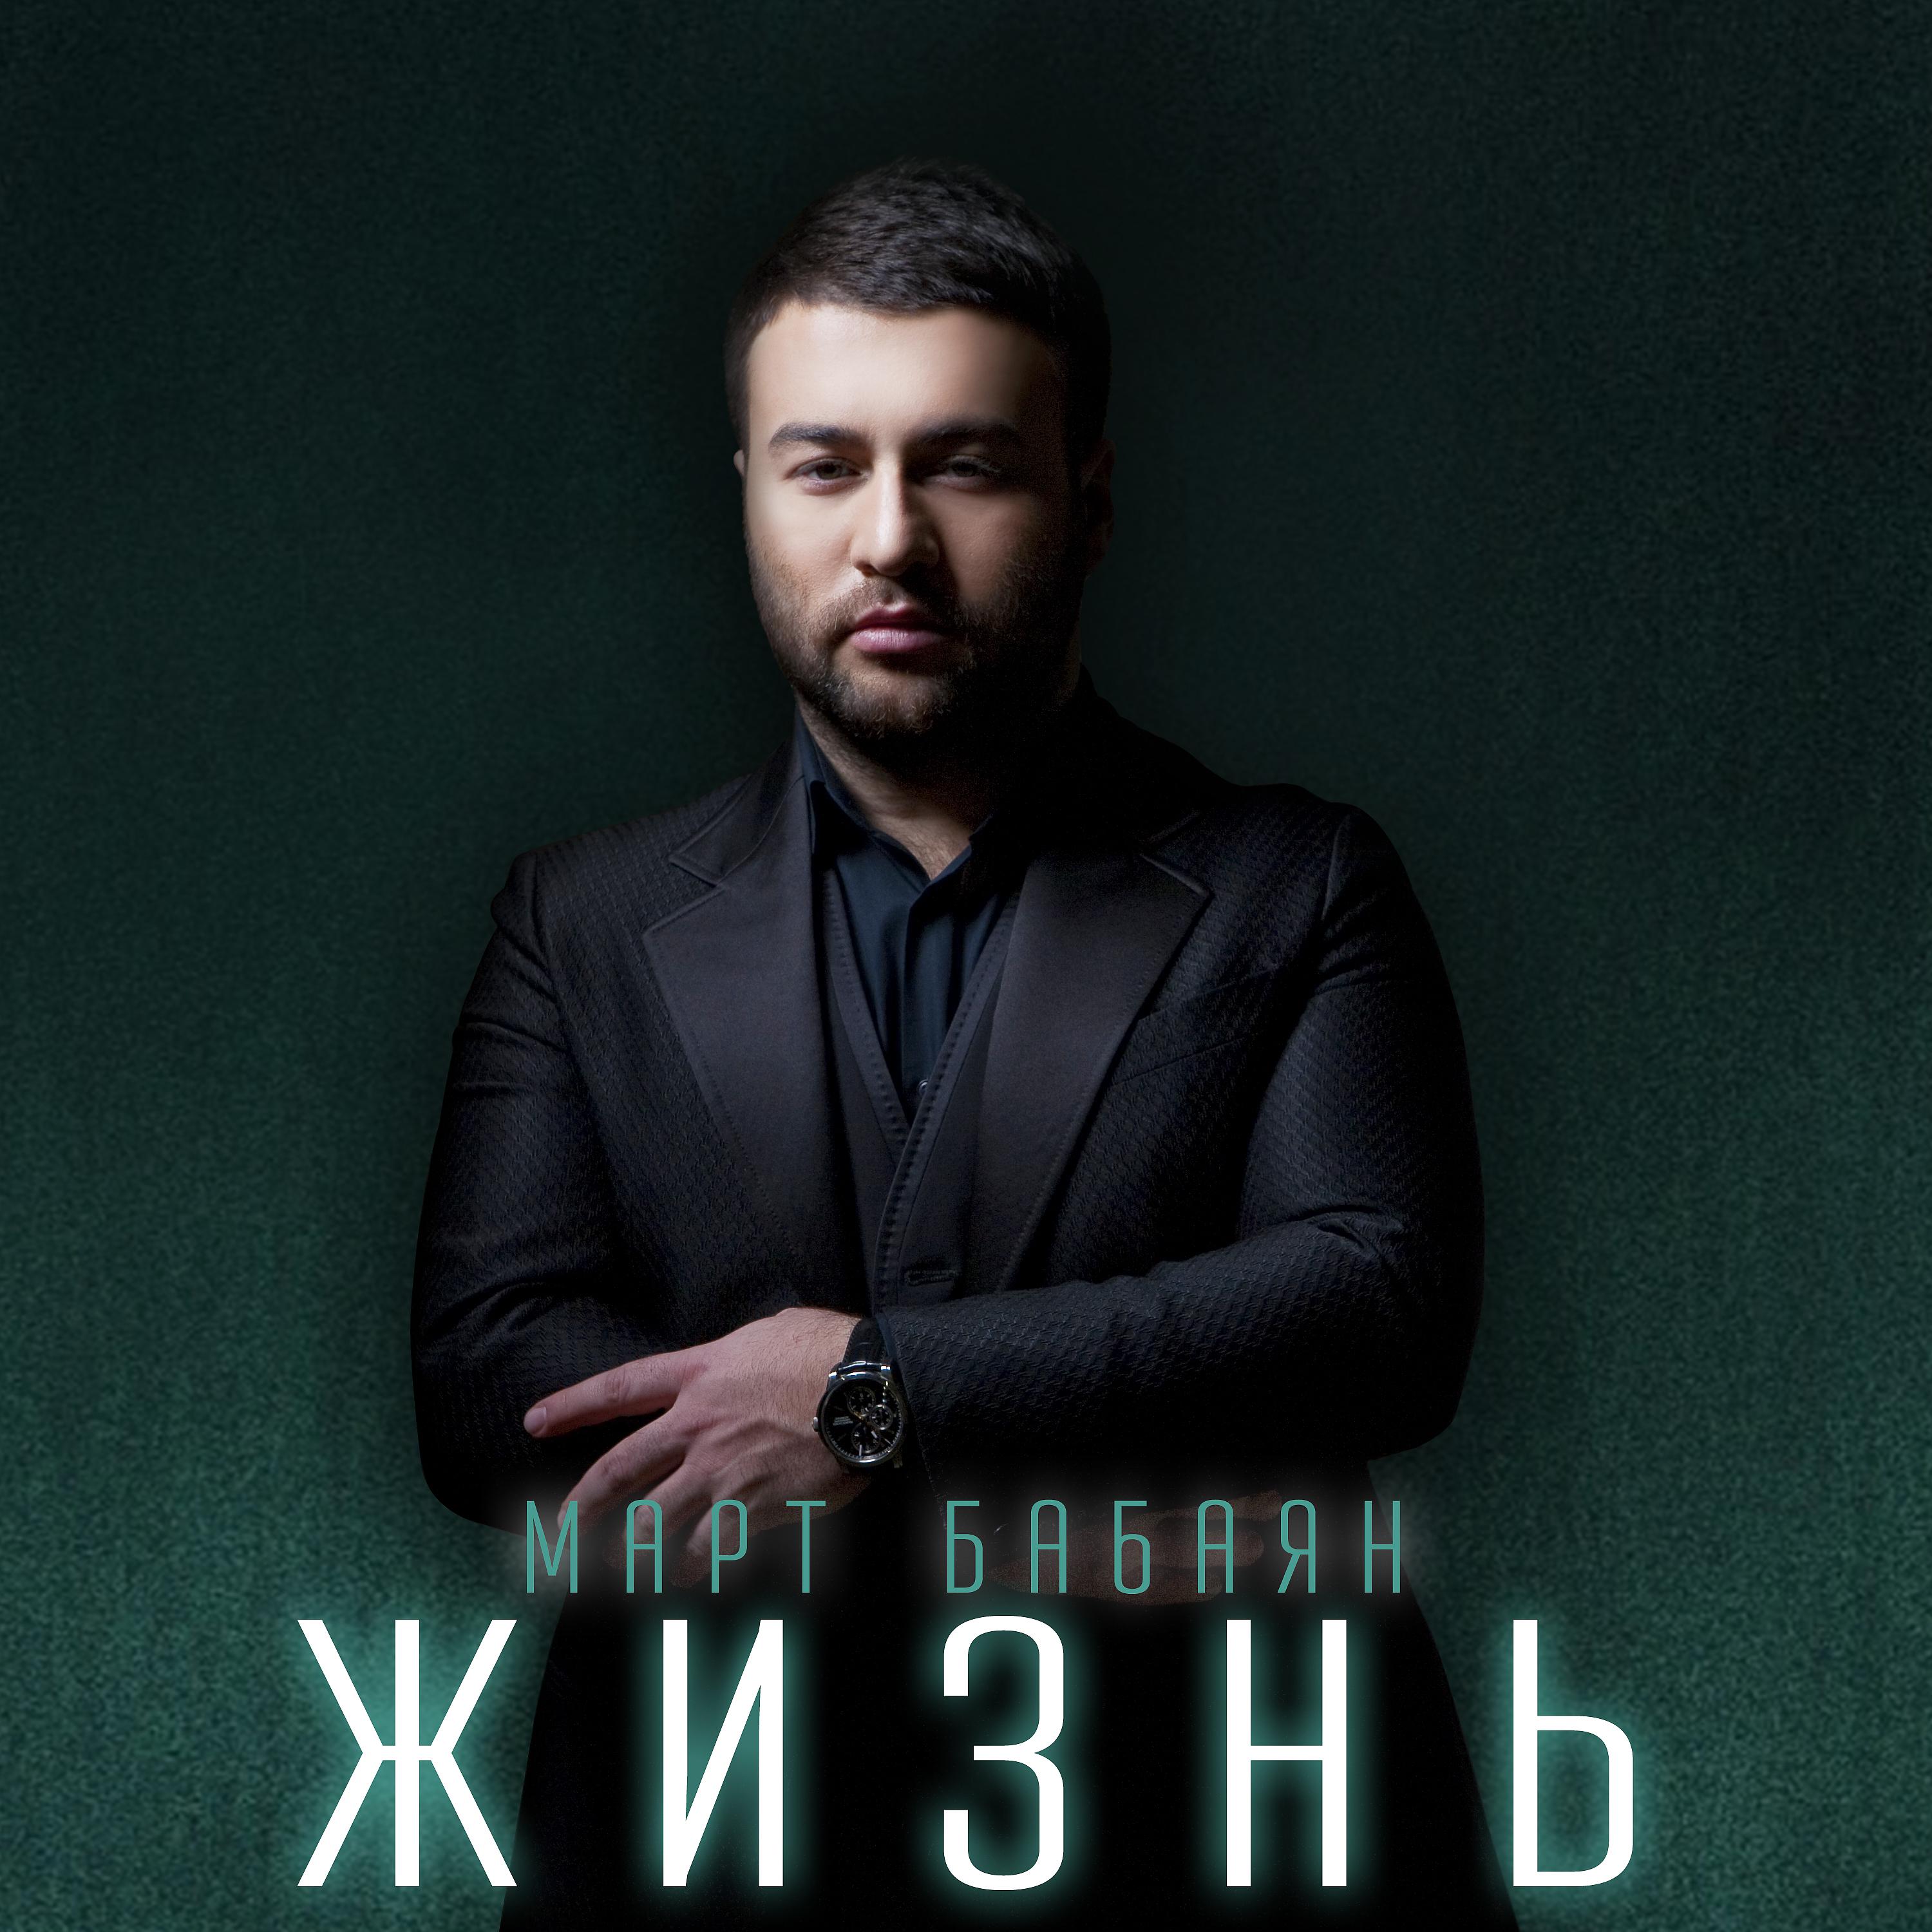 Март Бабаян, Анна Семенович - Люби (Remix)